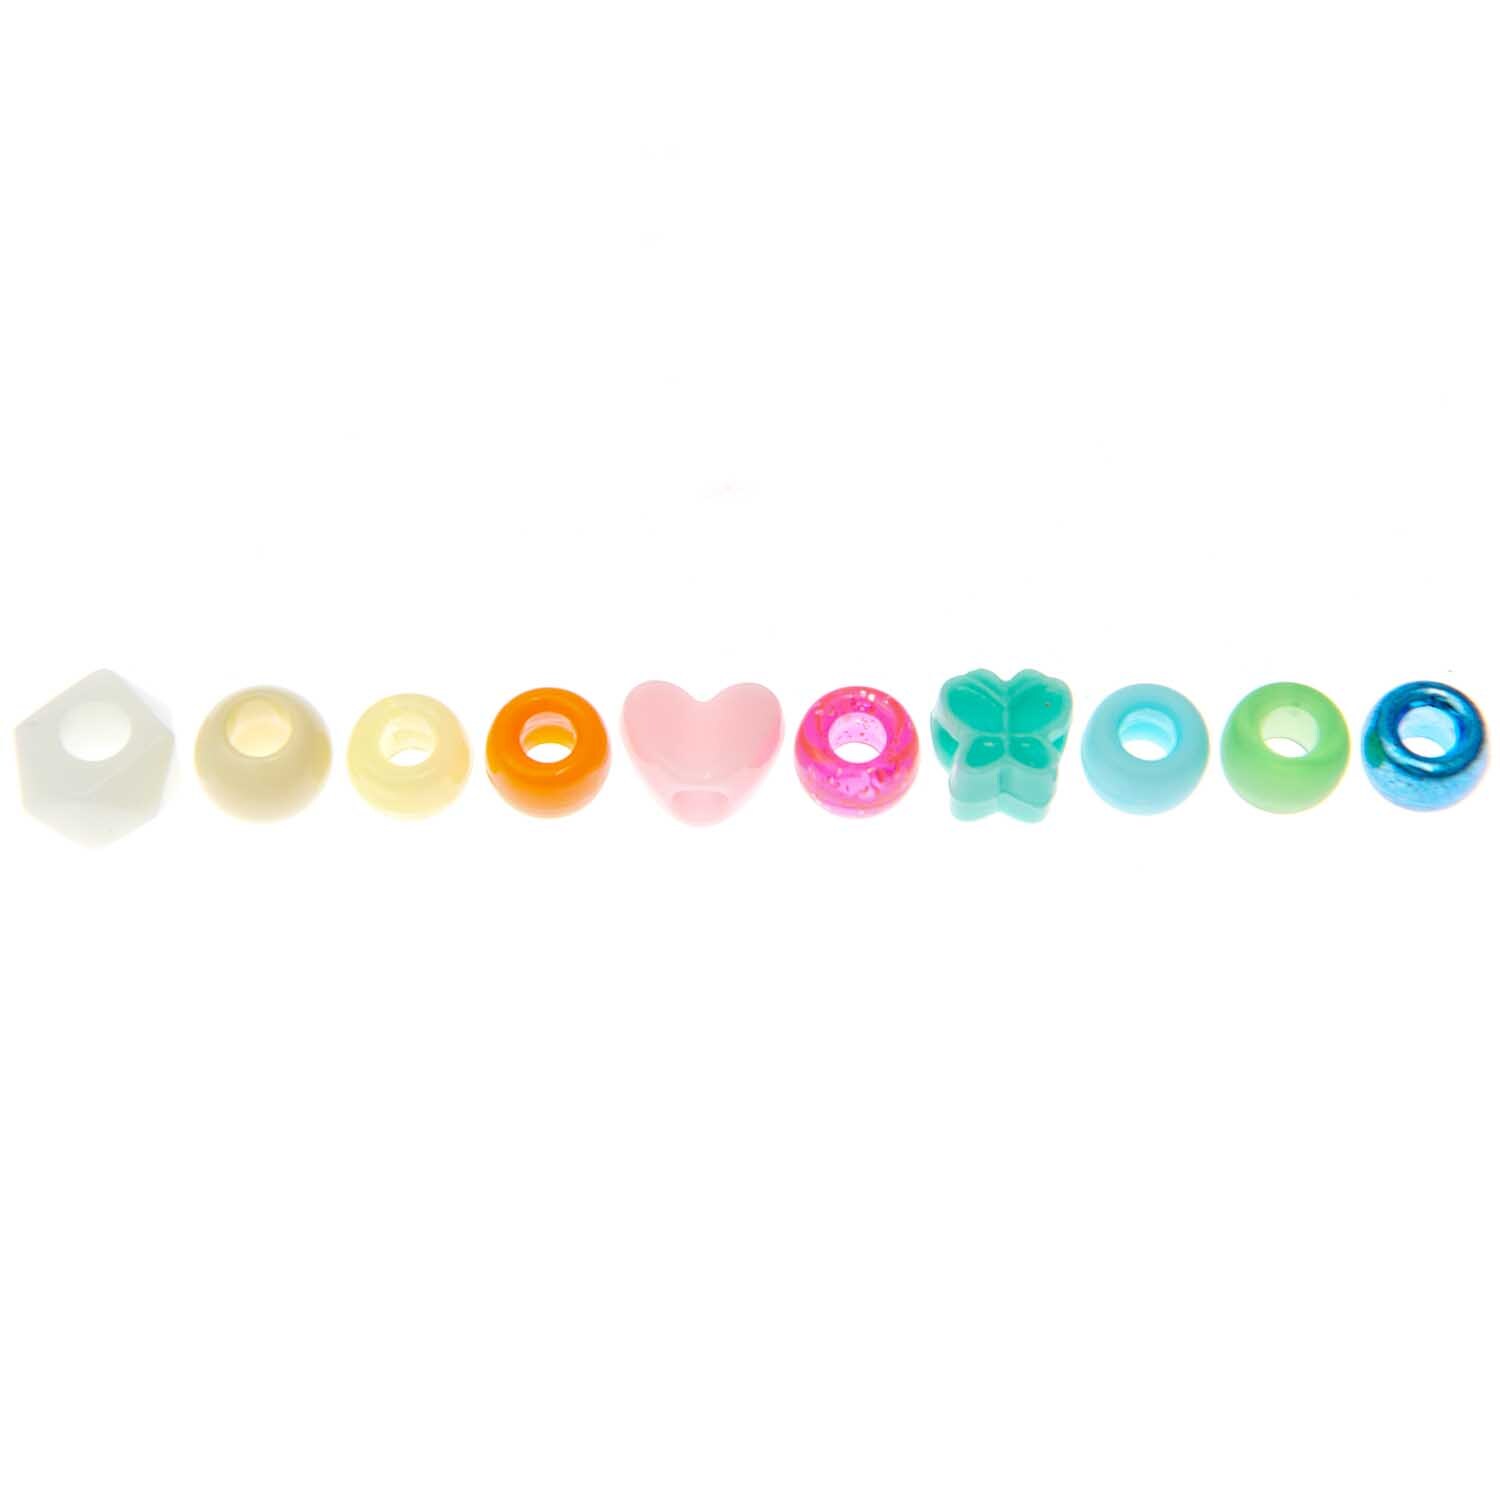 itoshii - Ponii Beads Star Mix 9x6mm 80 Stück